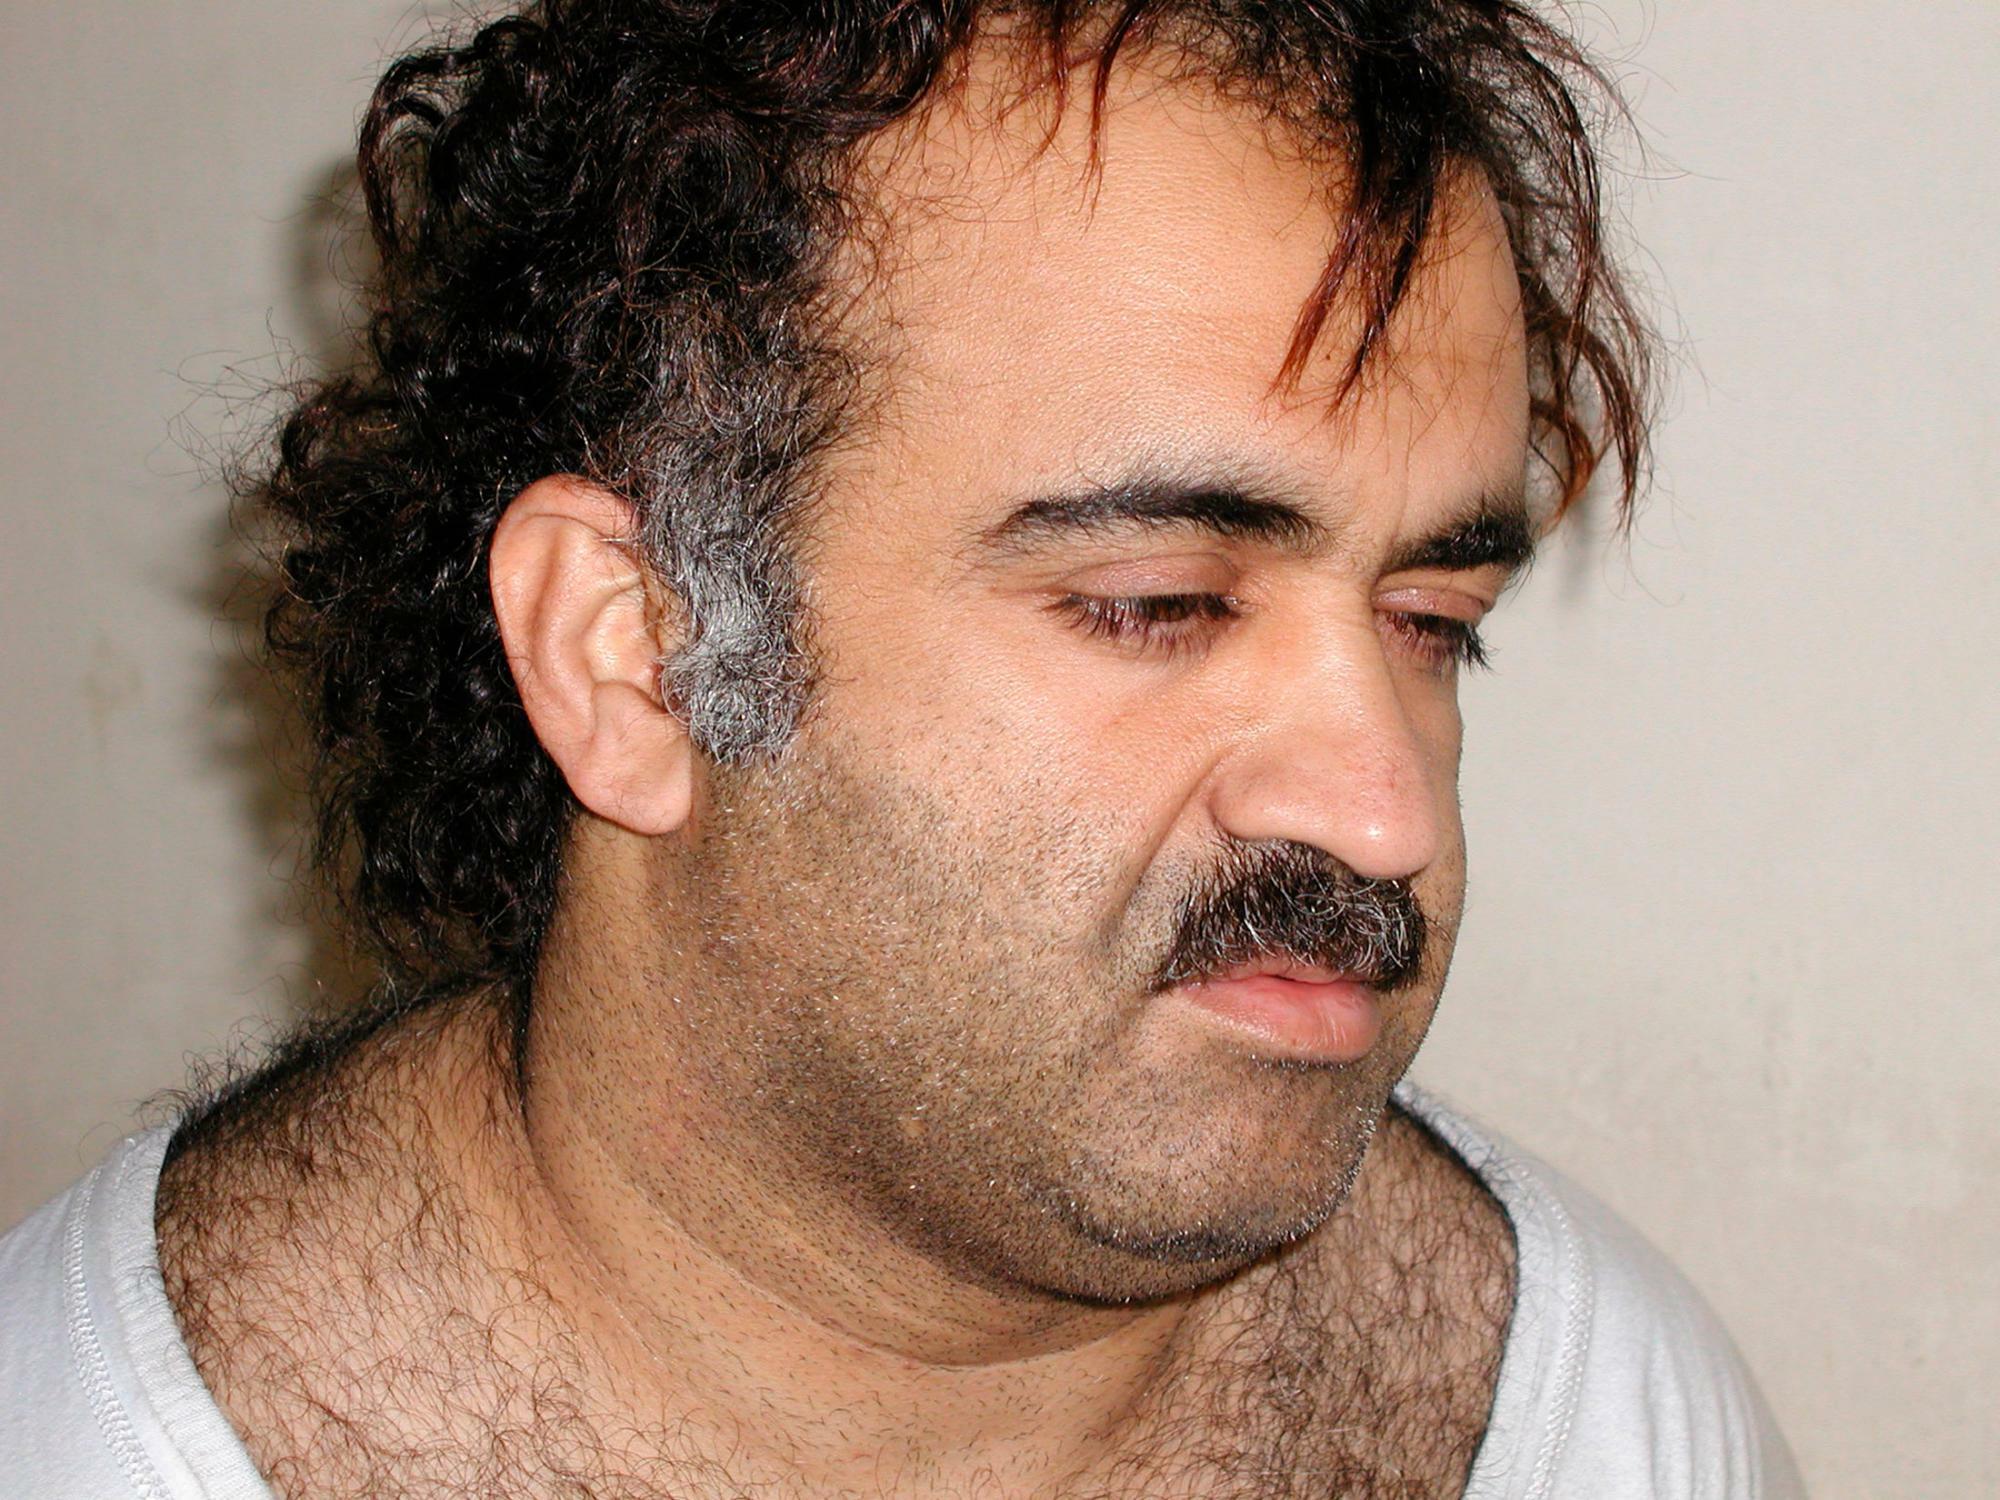 パキスタンで拘束当時（2003年）のふくよかだったモハメド被告。現在はやせ細りオレンジ色の髭がトレードマーク。パキスタン出身、4月14日で59歳になった。